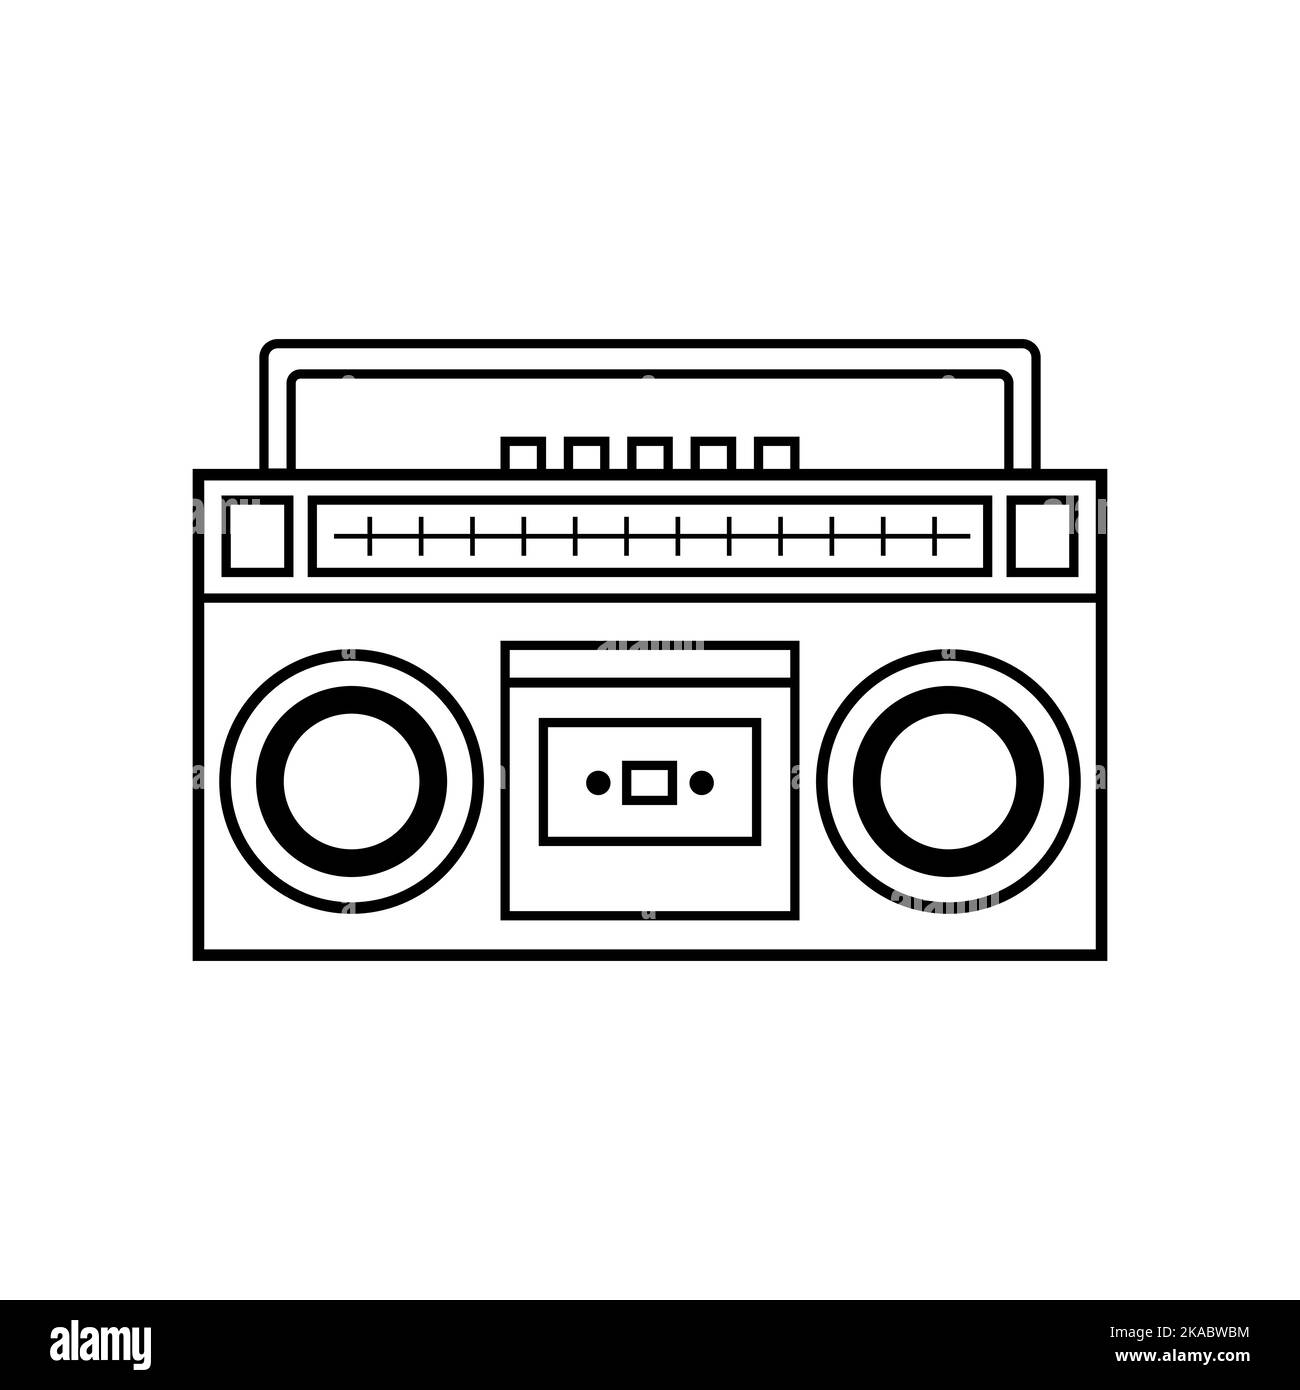 Lettore di cassette stereo retro. Illustrazione vettoriale del registratore musicale. Illustrazione Vettoriale